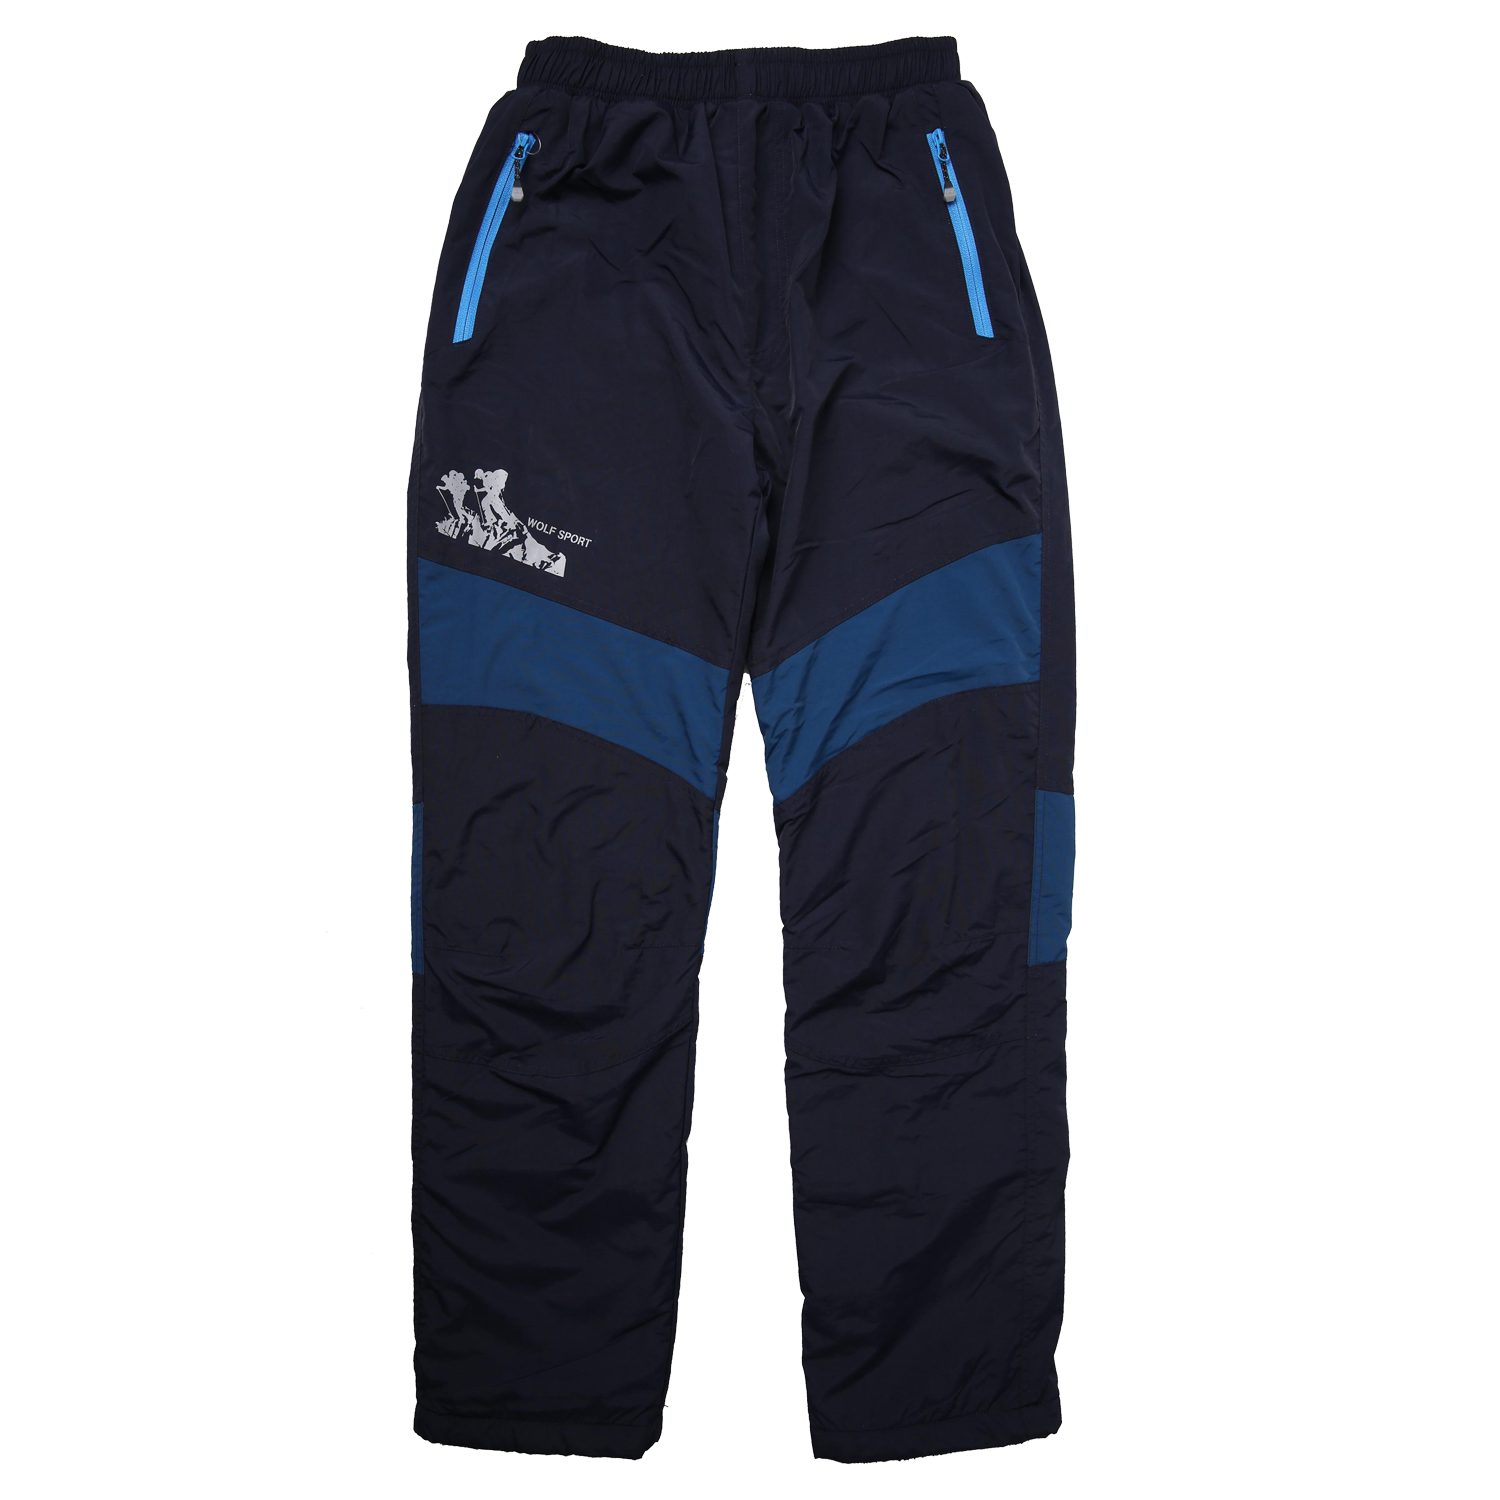 Chlapecké šusťákové kalhoty, zateplené - Wolf B2274, tmavě modrá/ petrol Barva: Modrá tmavě, Velikost: 134